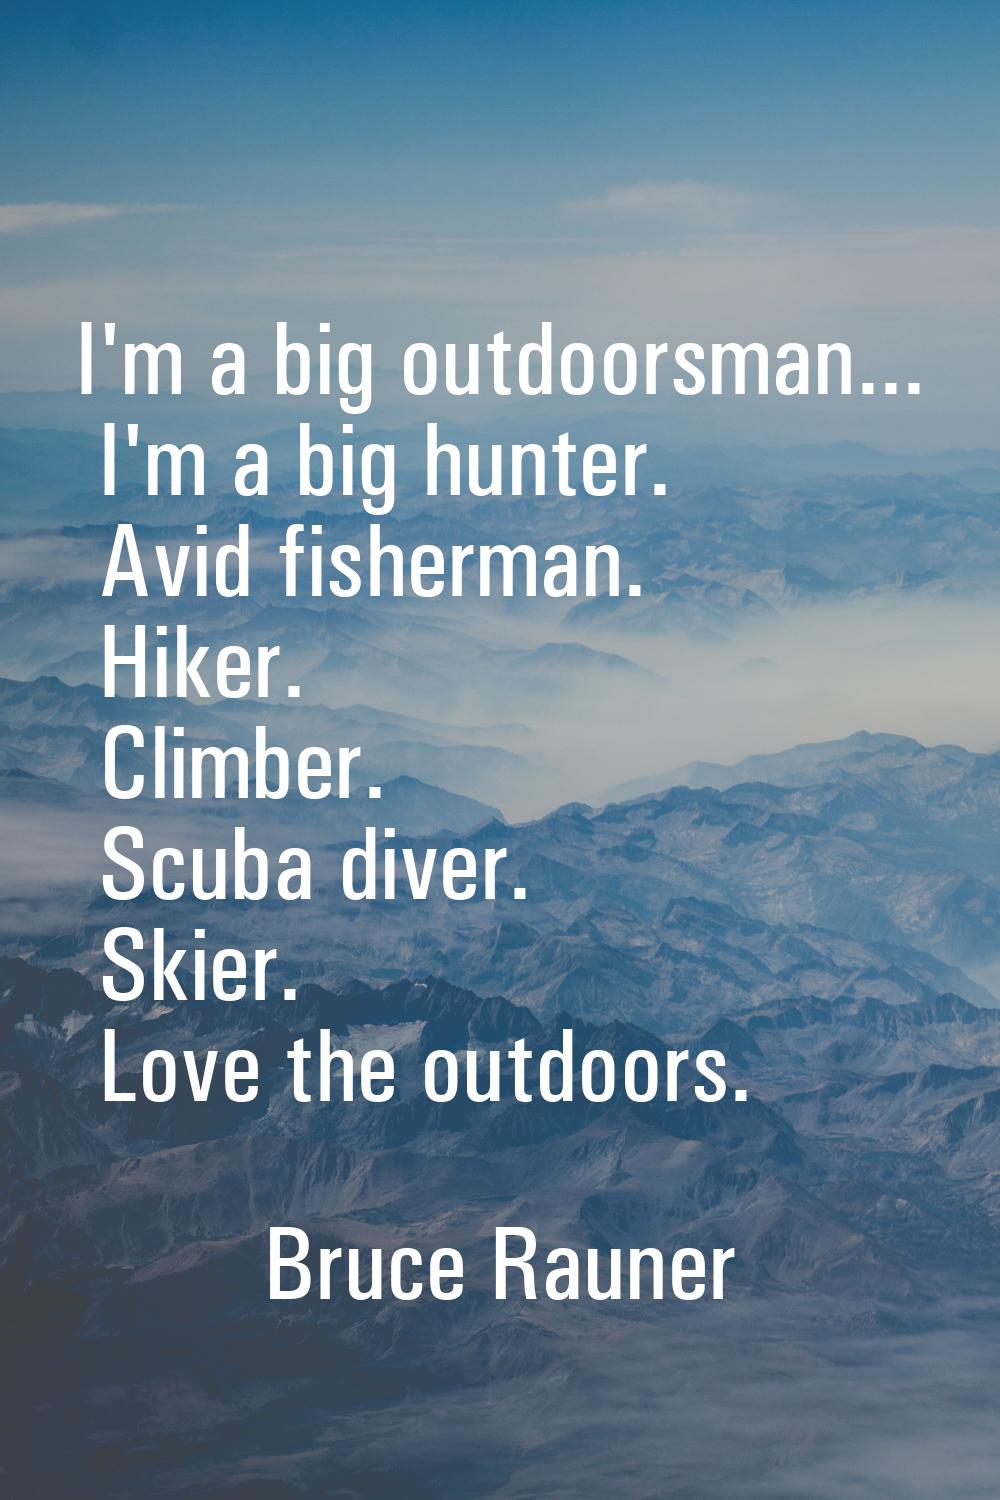 I'm a big outdoorsman... I'm a big hunter. Avid fisherman. Hiker. Climber. Scuba diver. Skier. Love